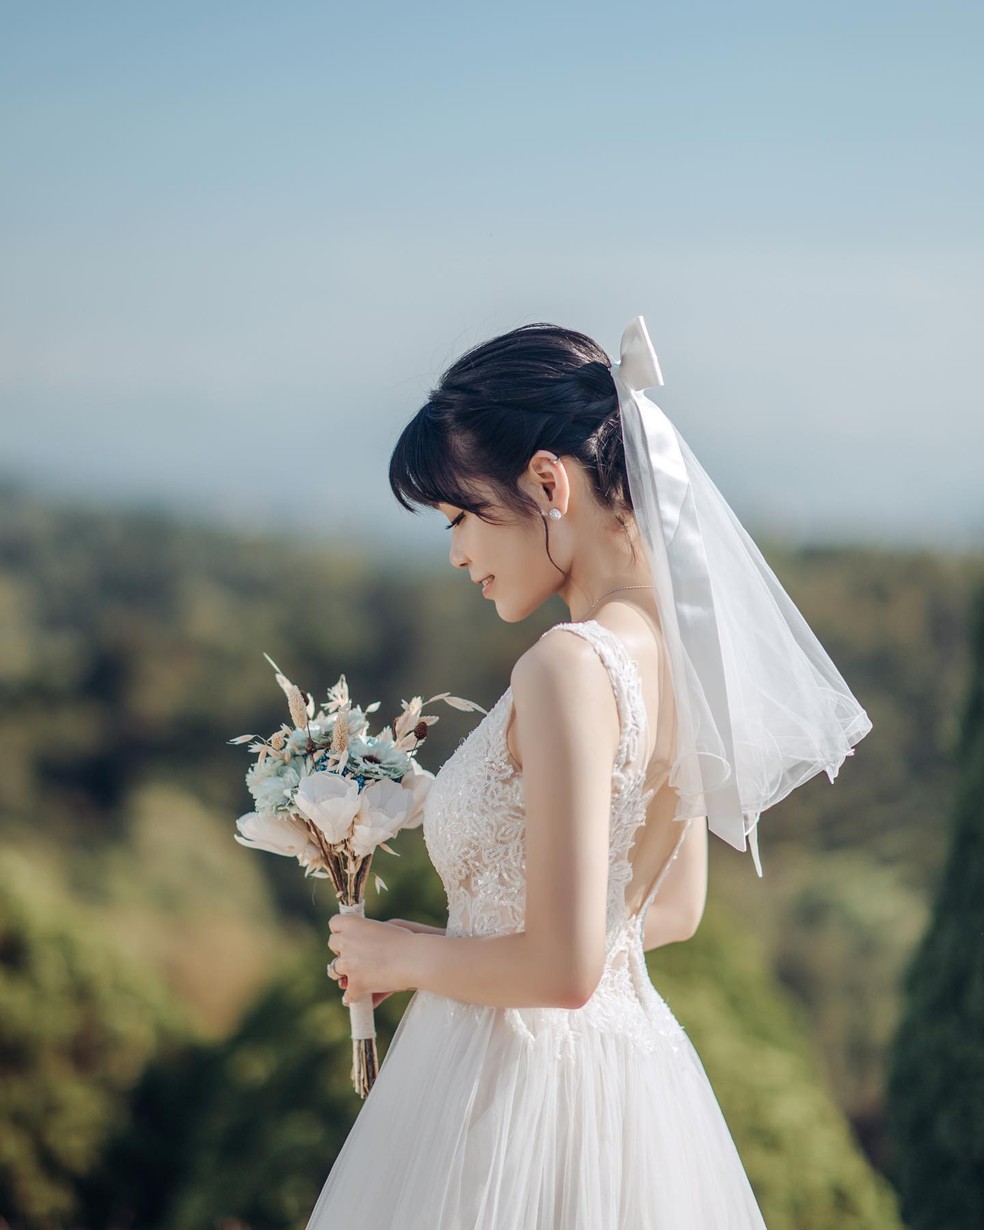 Penteados para noivas: 21 opções para trocar as alianças | Cabelo | Glamour